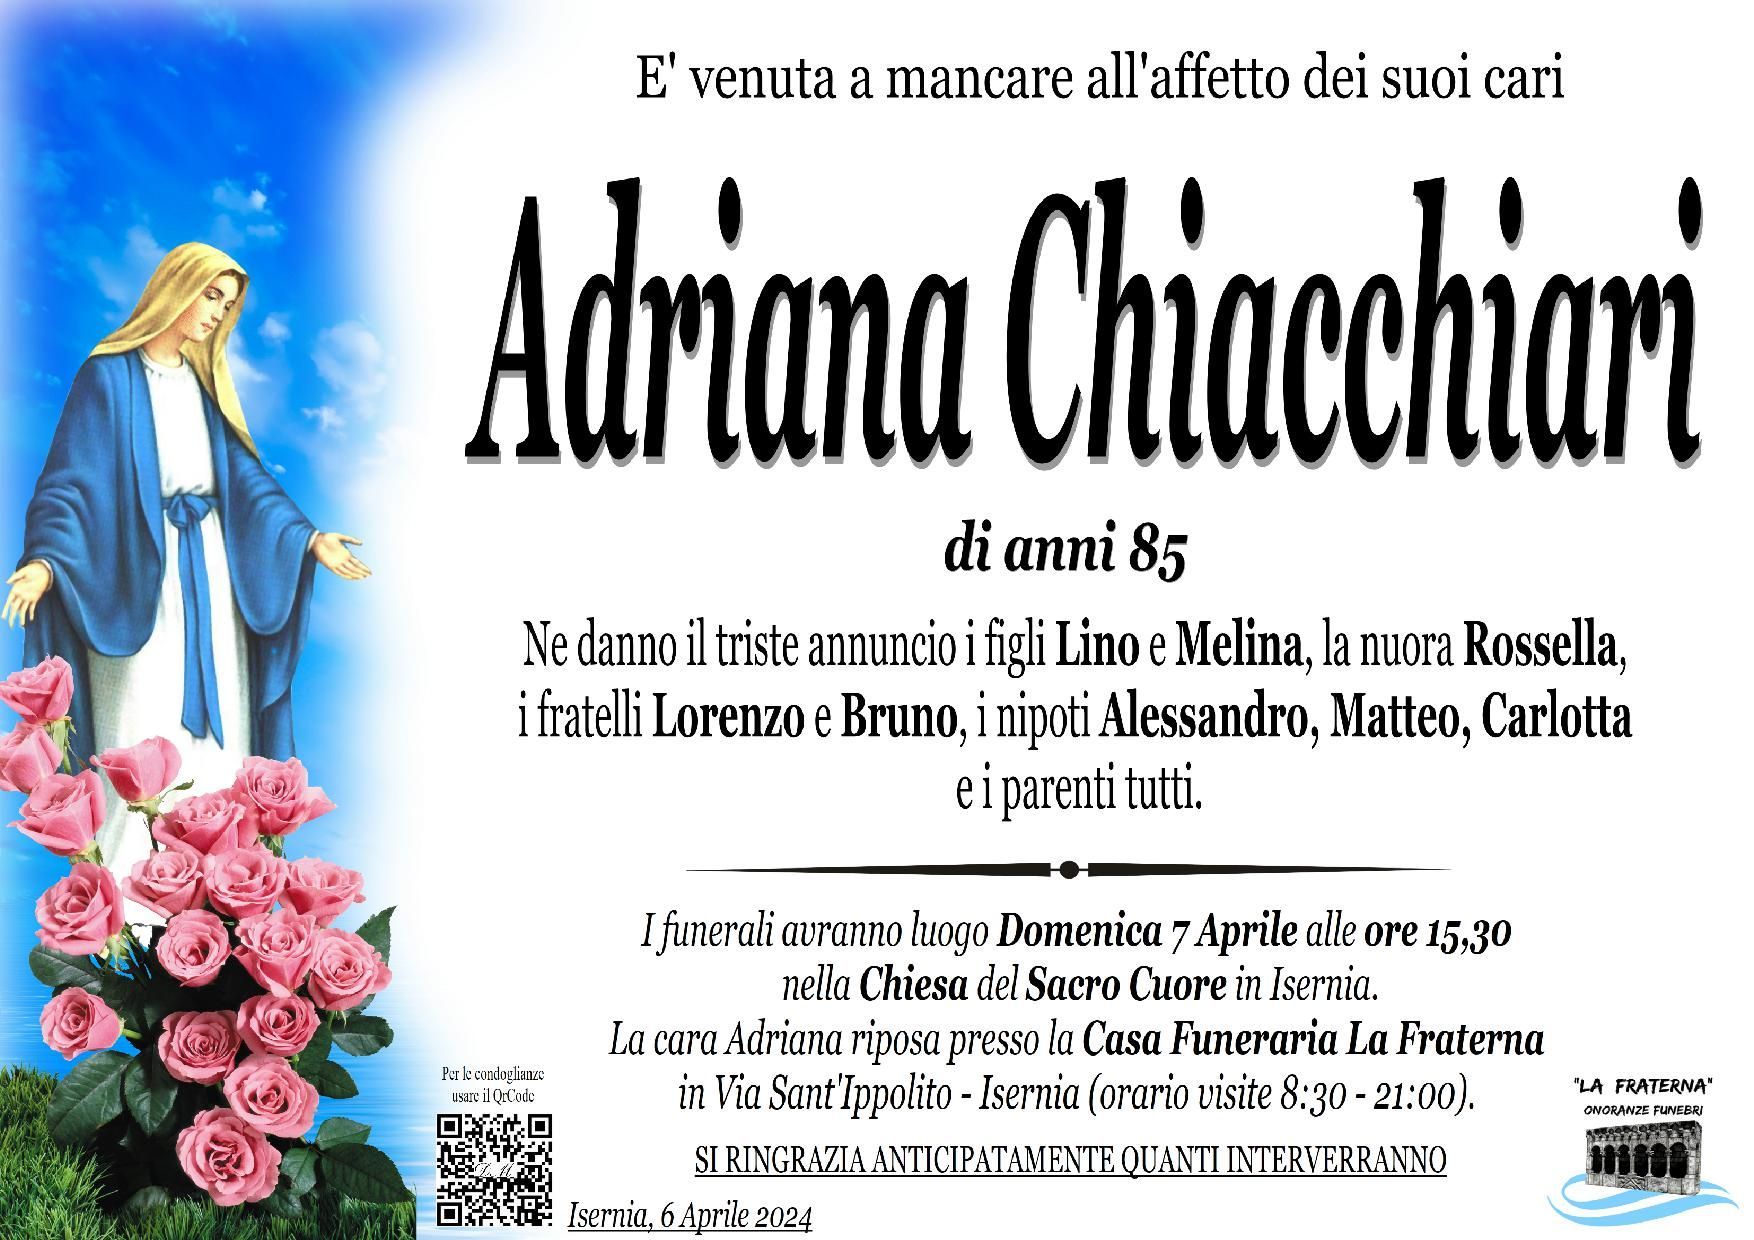 necrologio Adriana Chiacchiari